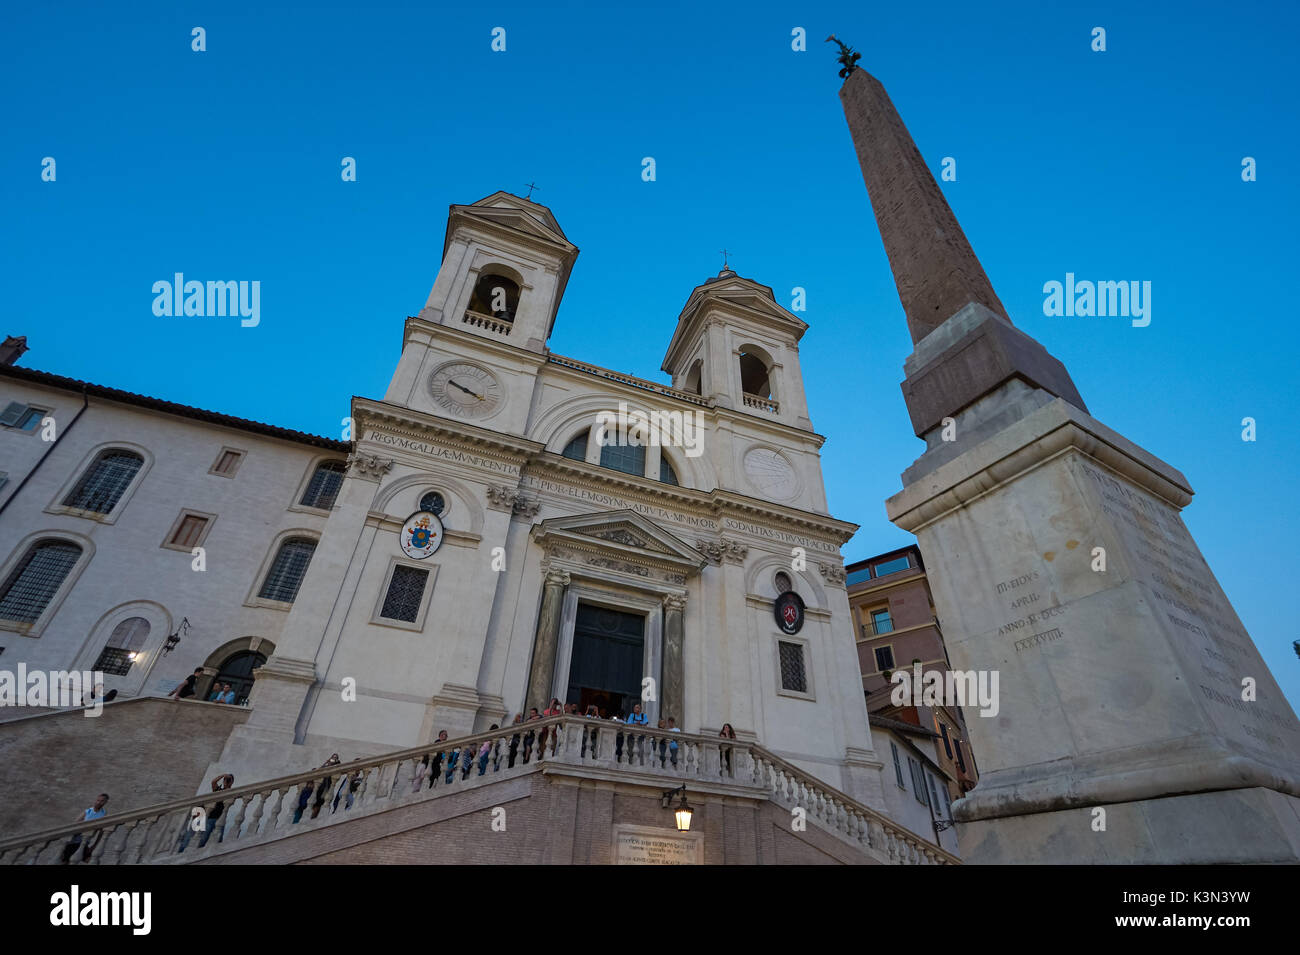 The church of the Santissima Trinità dei Monti and Sallustiano Obelisk near the Spanish Steps in Rome, Italy Stock Photo